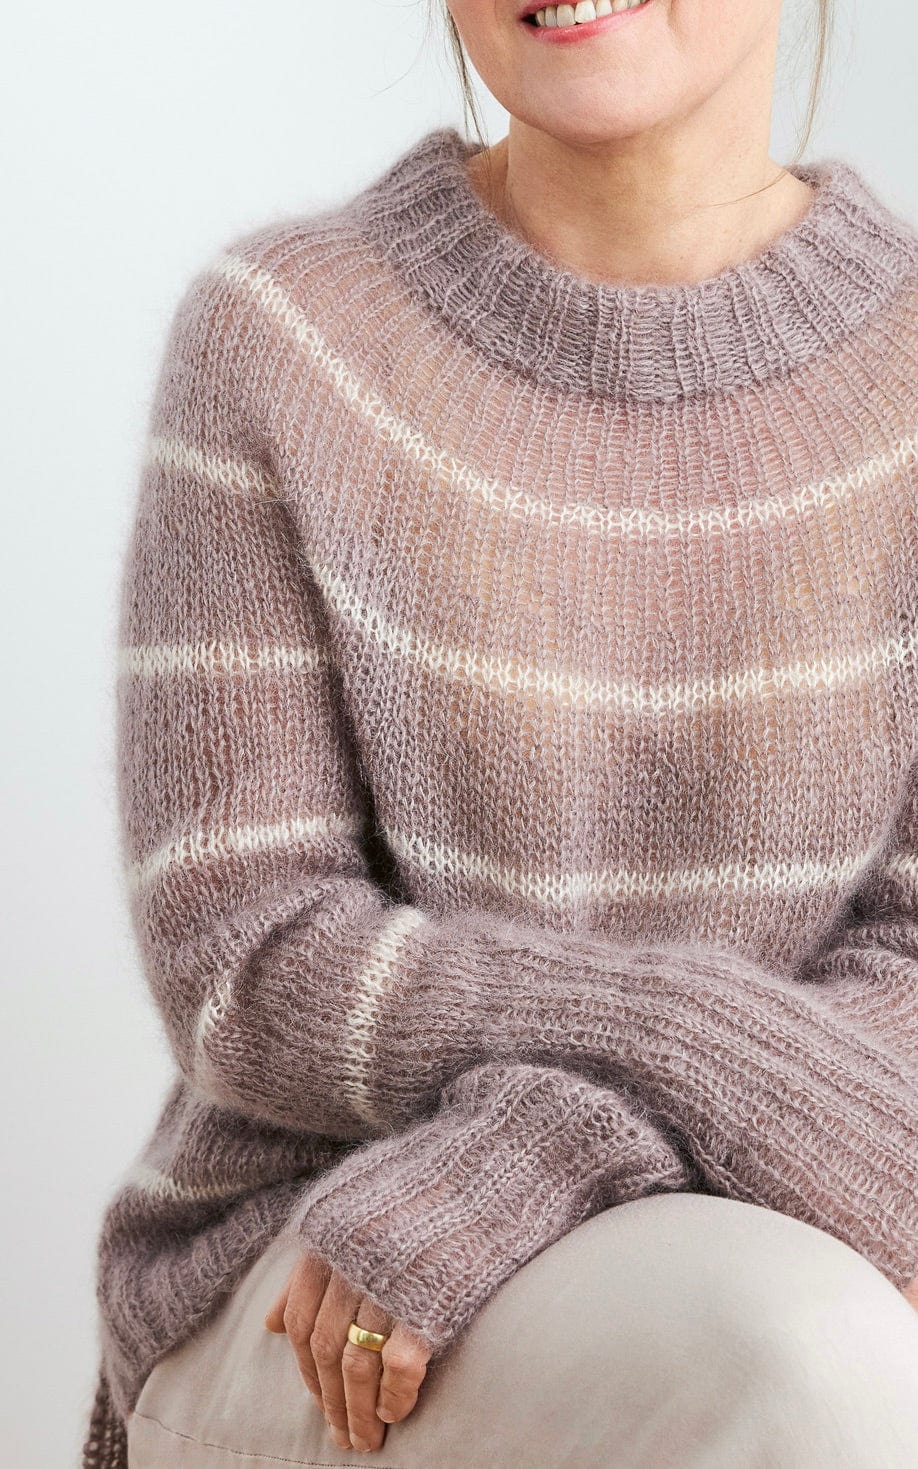 Mapala Sweater Mohair Edition - SILKHAIR GESTREIFT - Strickset von ROSA P. jetzt online kaufen bei OONIQUE